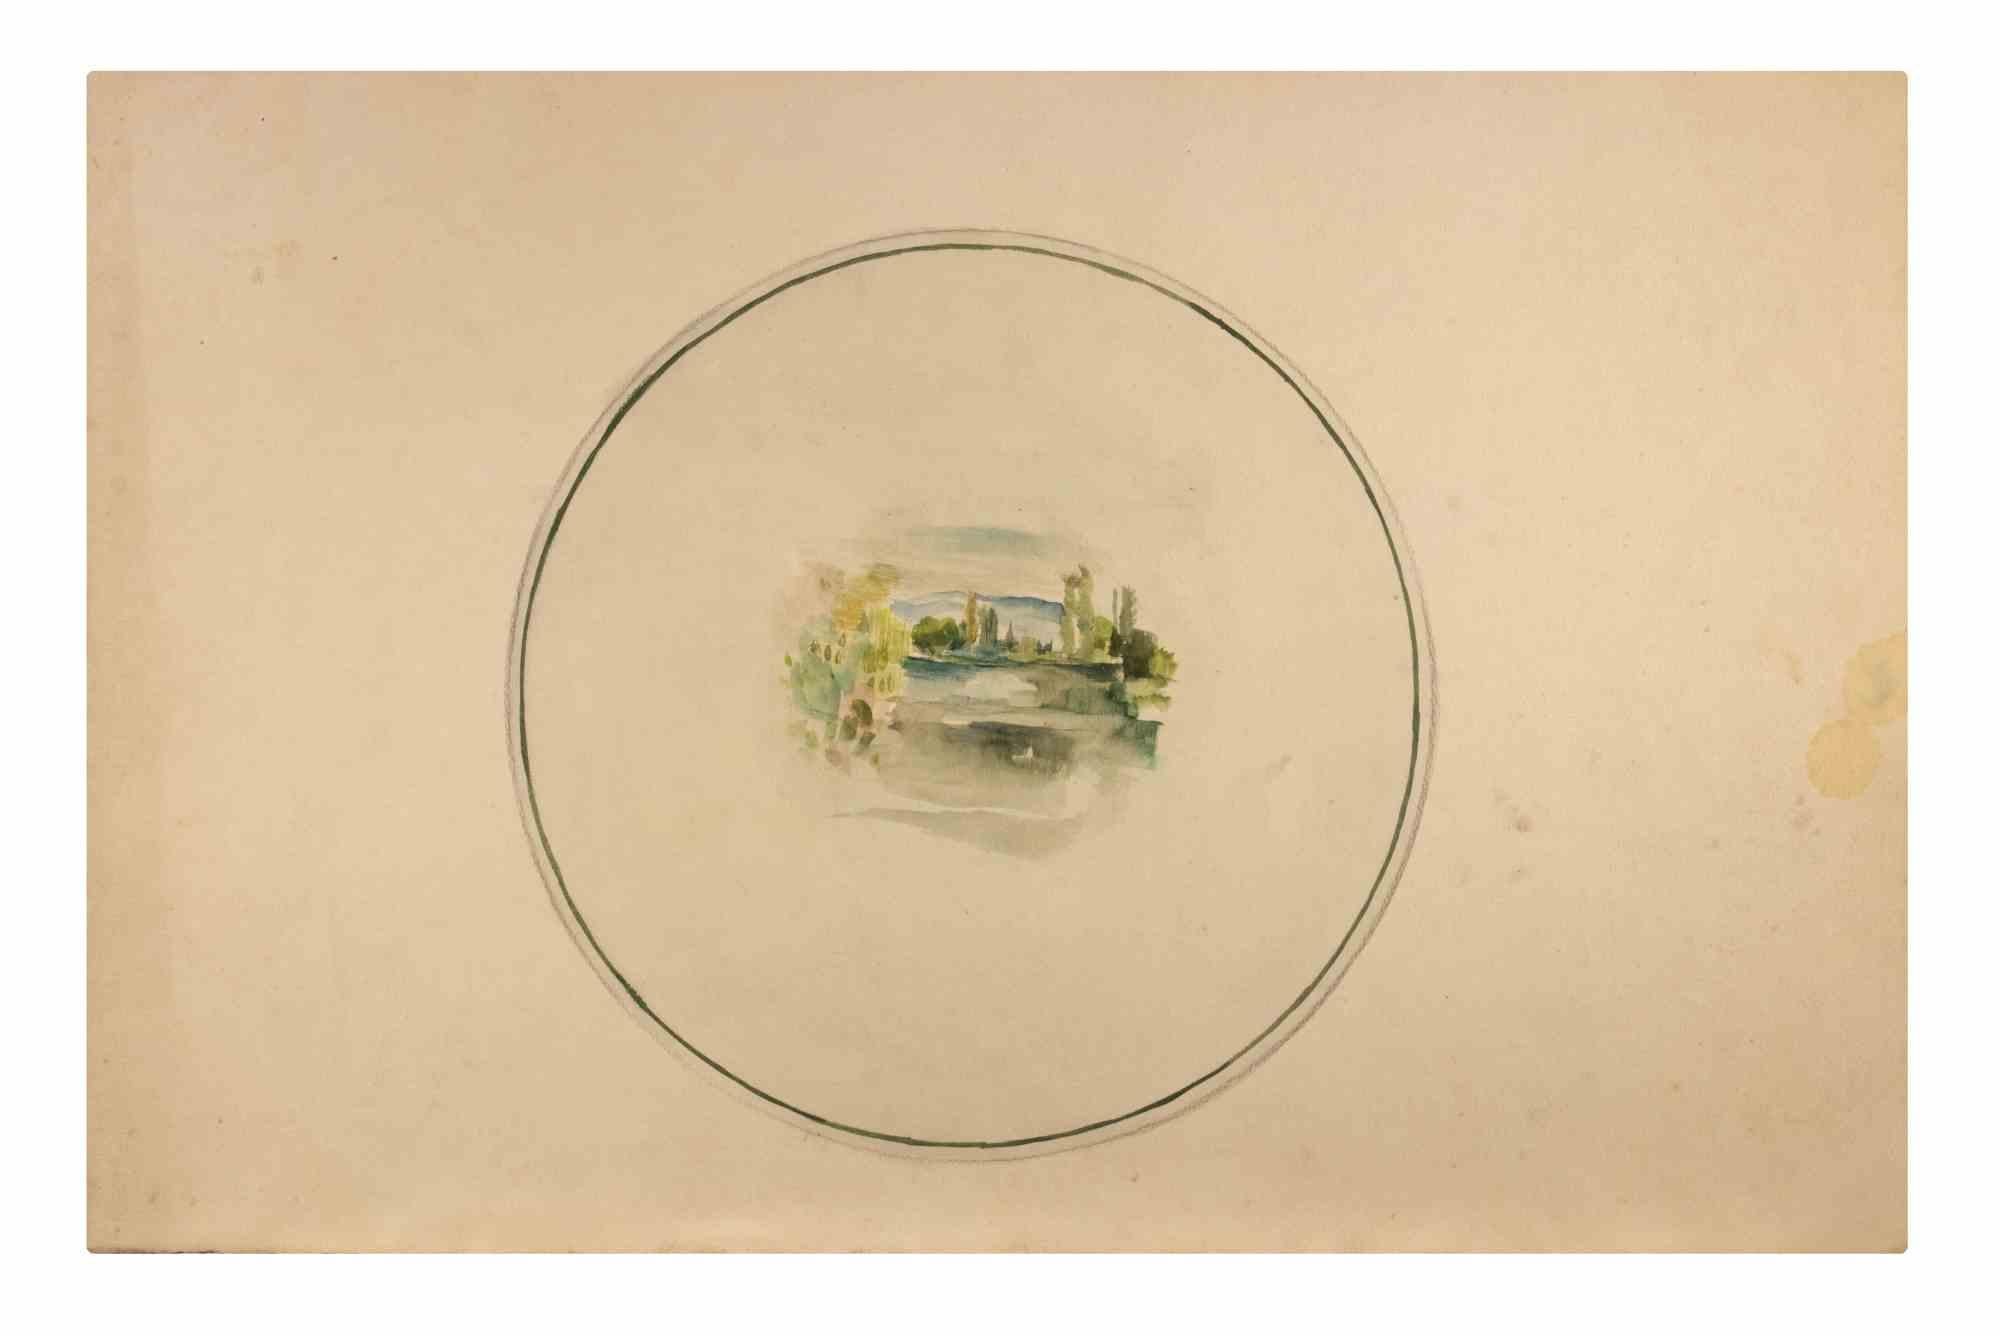 Paysage est une aquarelle réalisée par Reynold Arnould  (Le Havre 1919 - Parigi 1980).

Bon état sur un carton jaune.

Pas de signature.

Reynold Arnould est né au Havre, en France, en 1919. Il a étudié à l'École des Beaux-Arts du Havre, et a